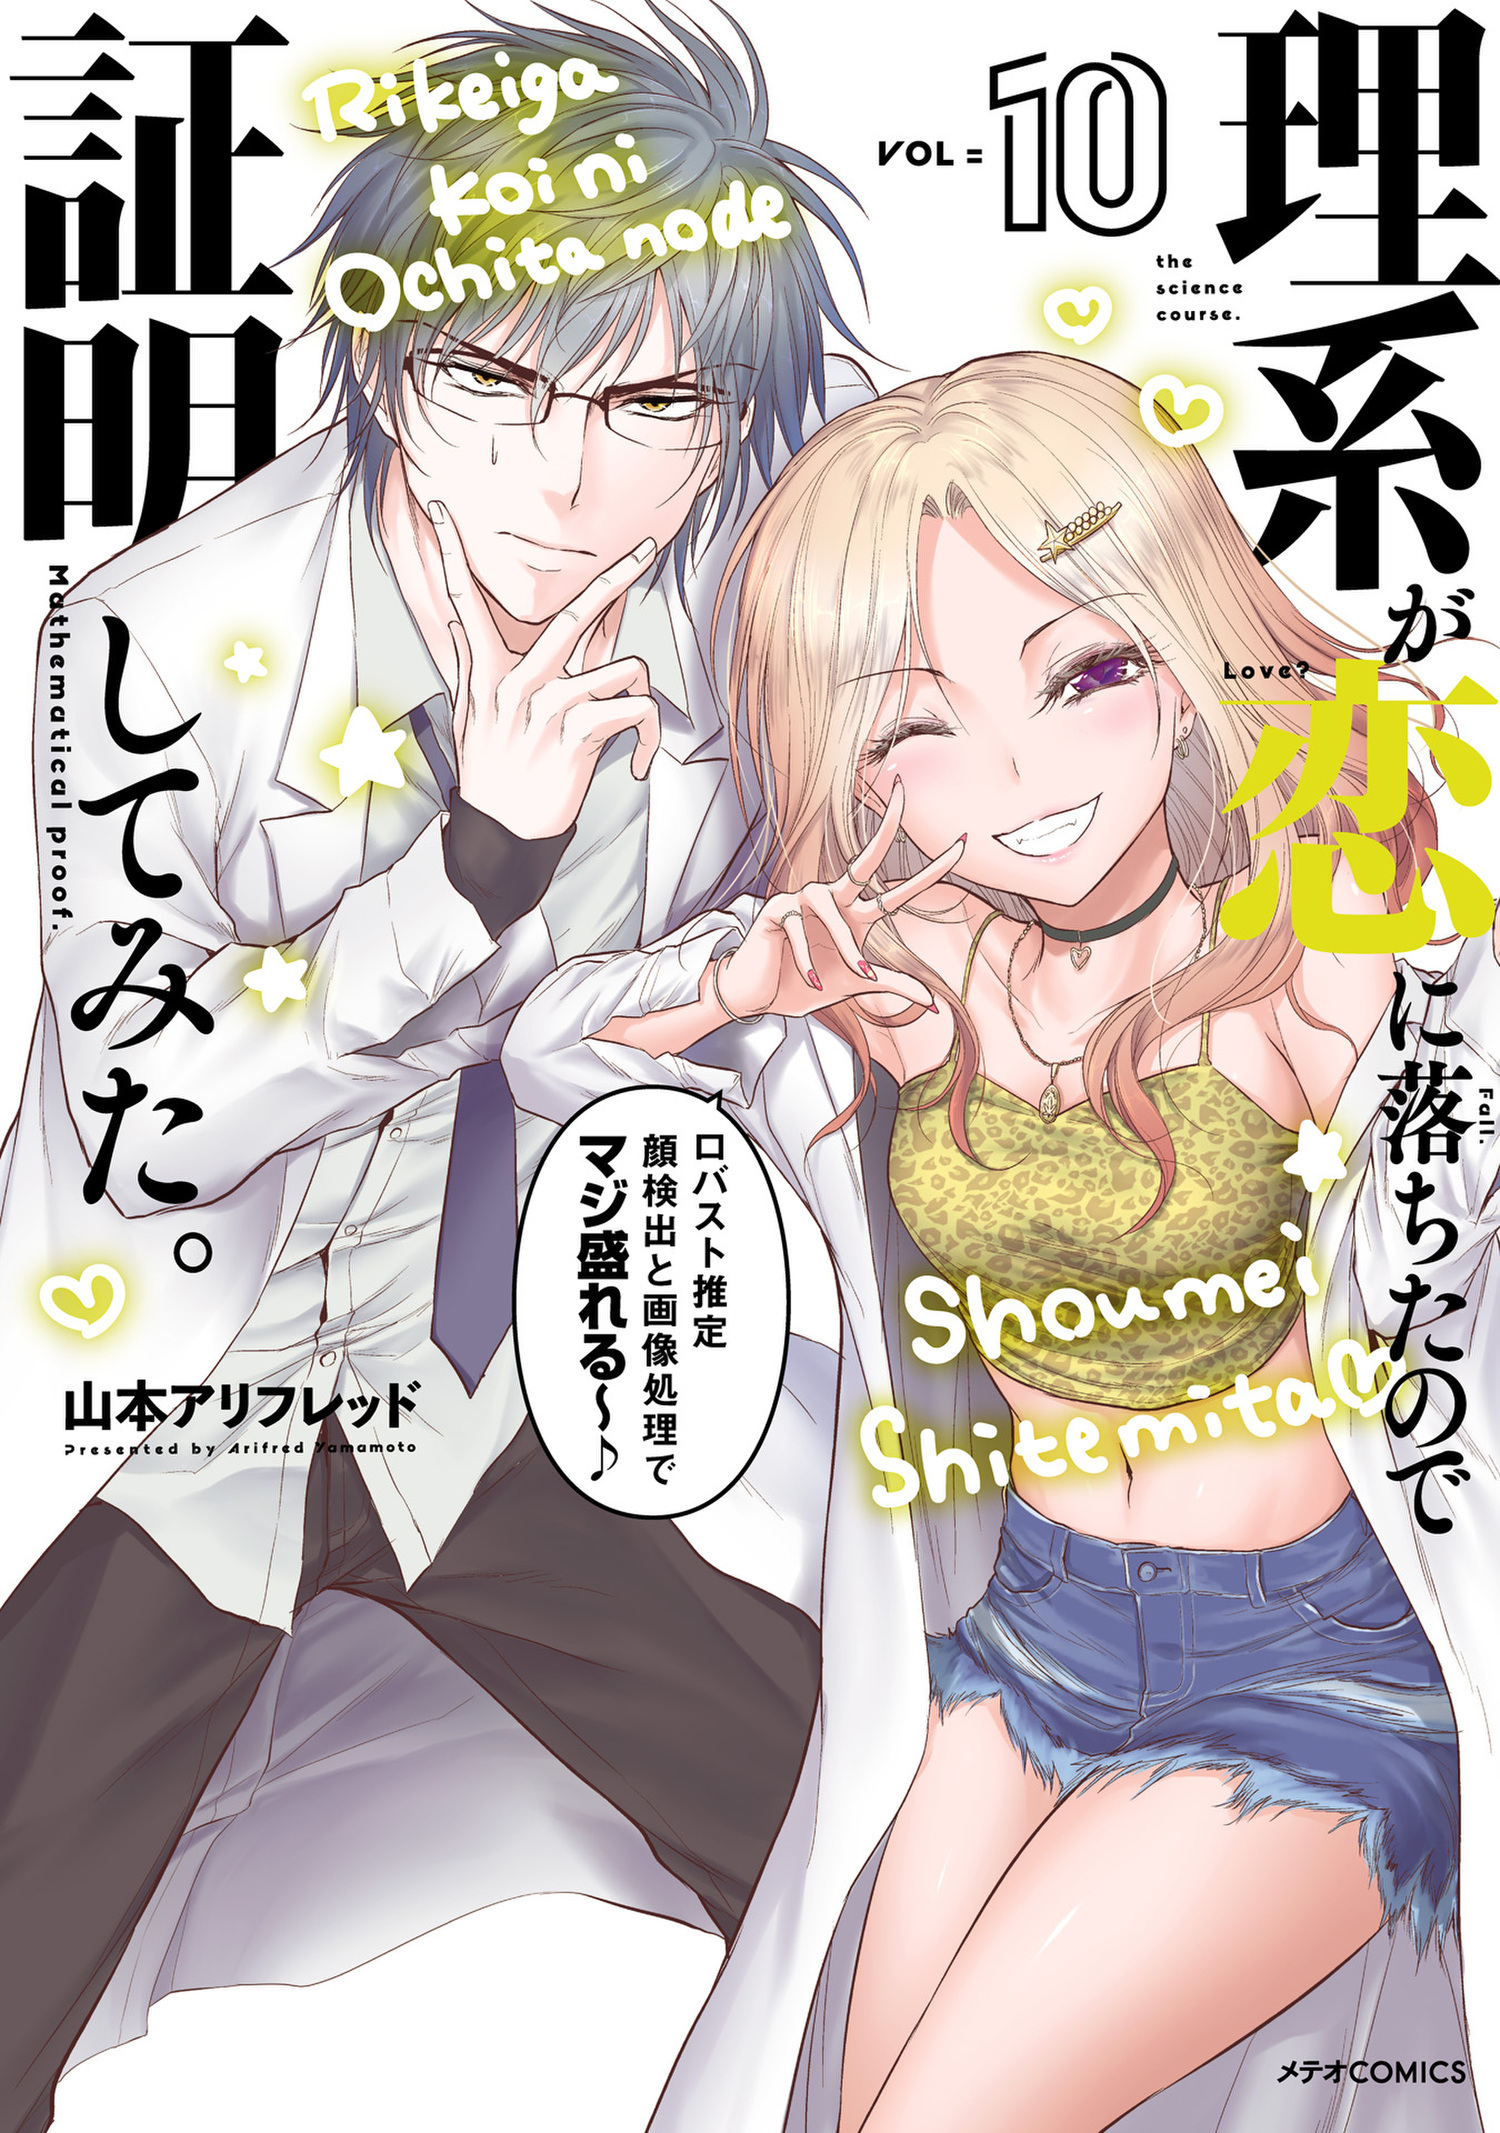 Arifred Yamamoto's Rikei ga Koi ni Ochita no de Shoumei Shite Mita Manga  Gets TV Anime - Crunchyroll News